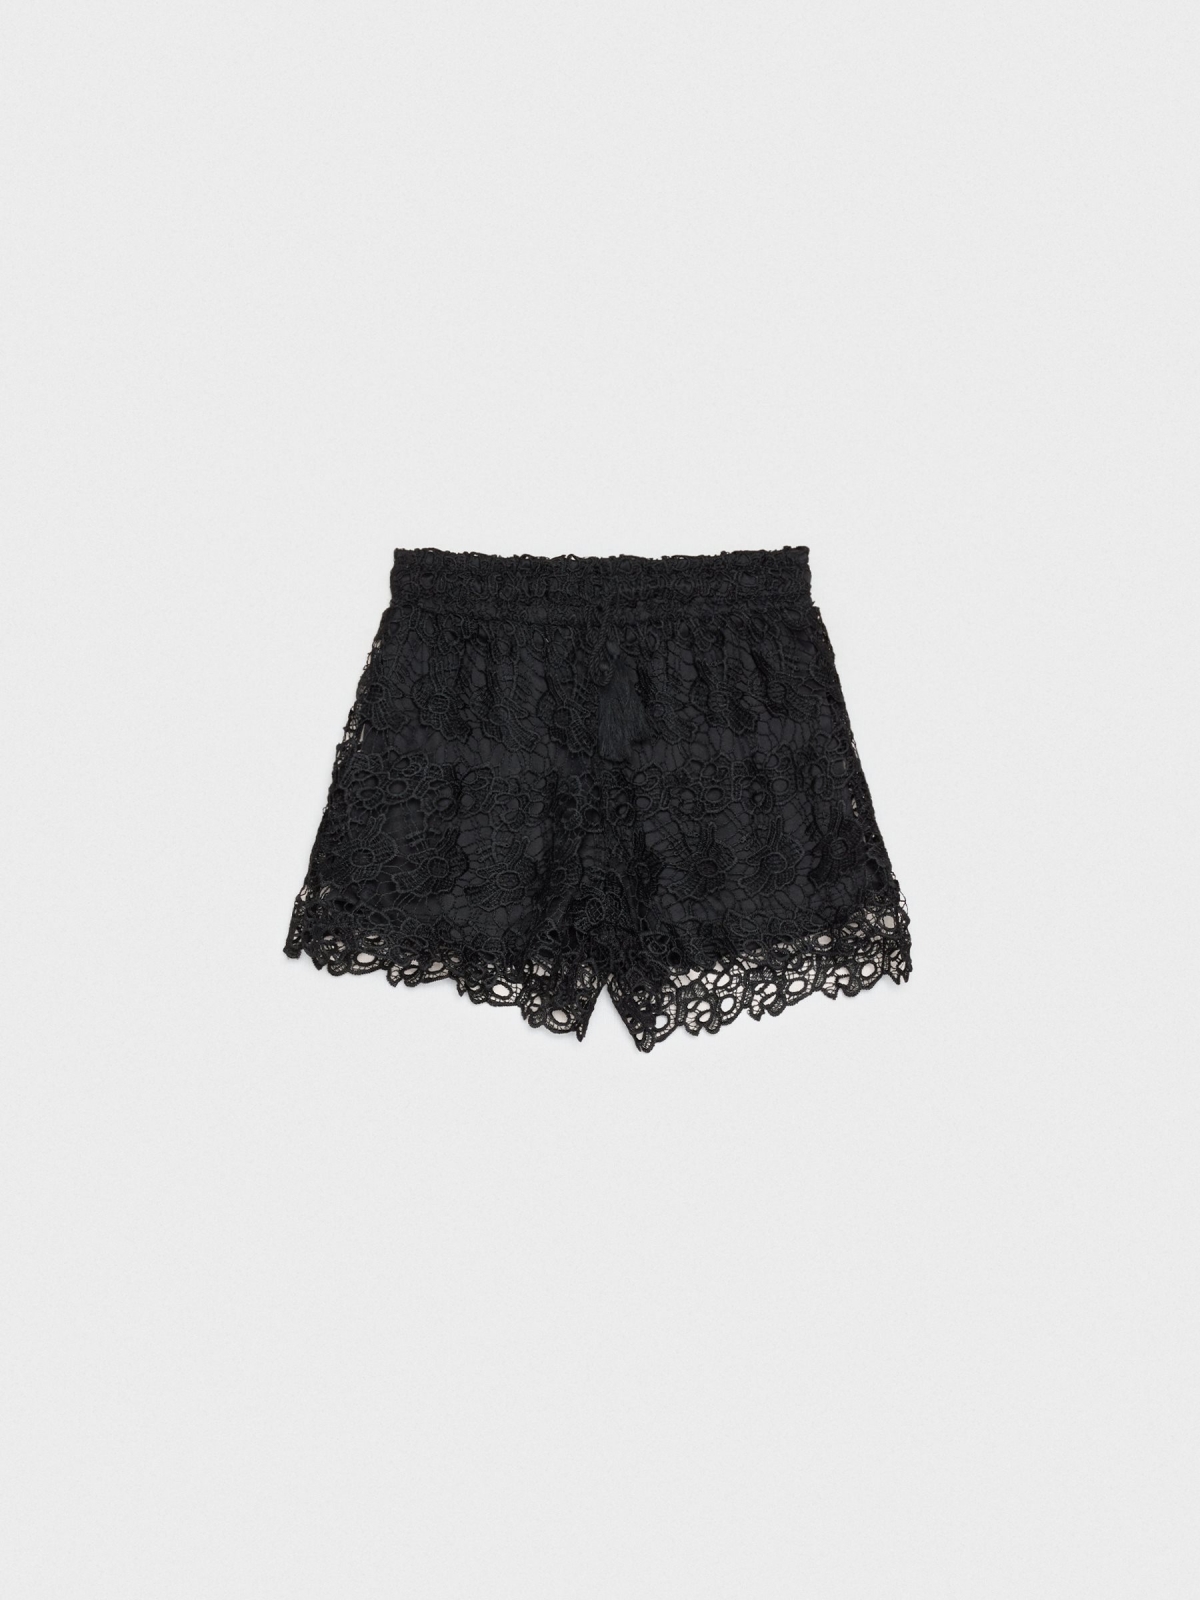  Elastic waist lace shorts black